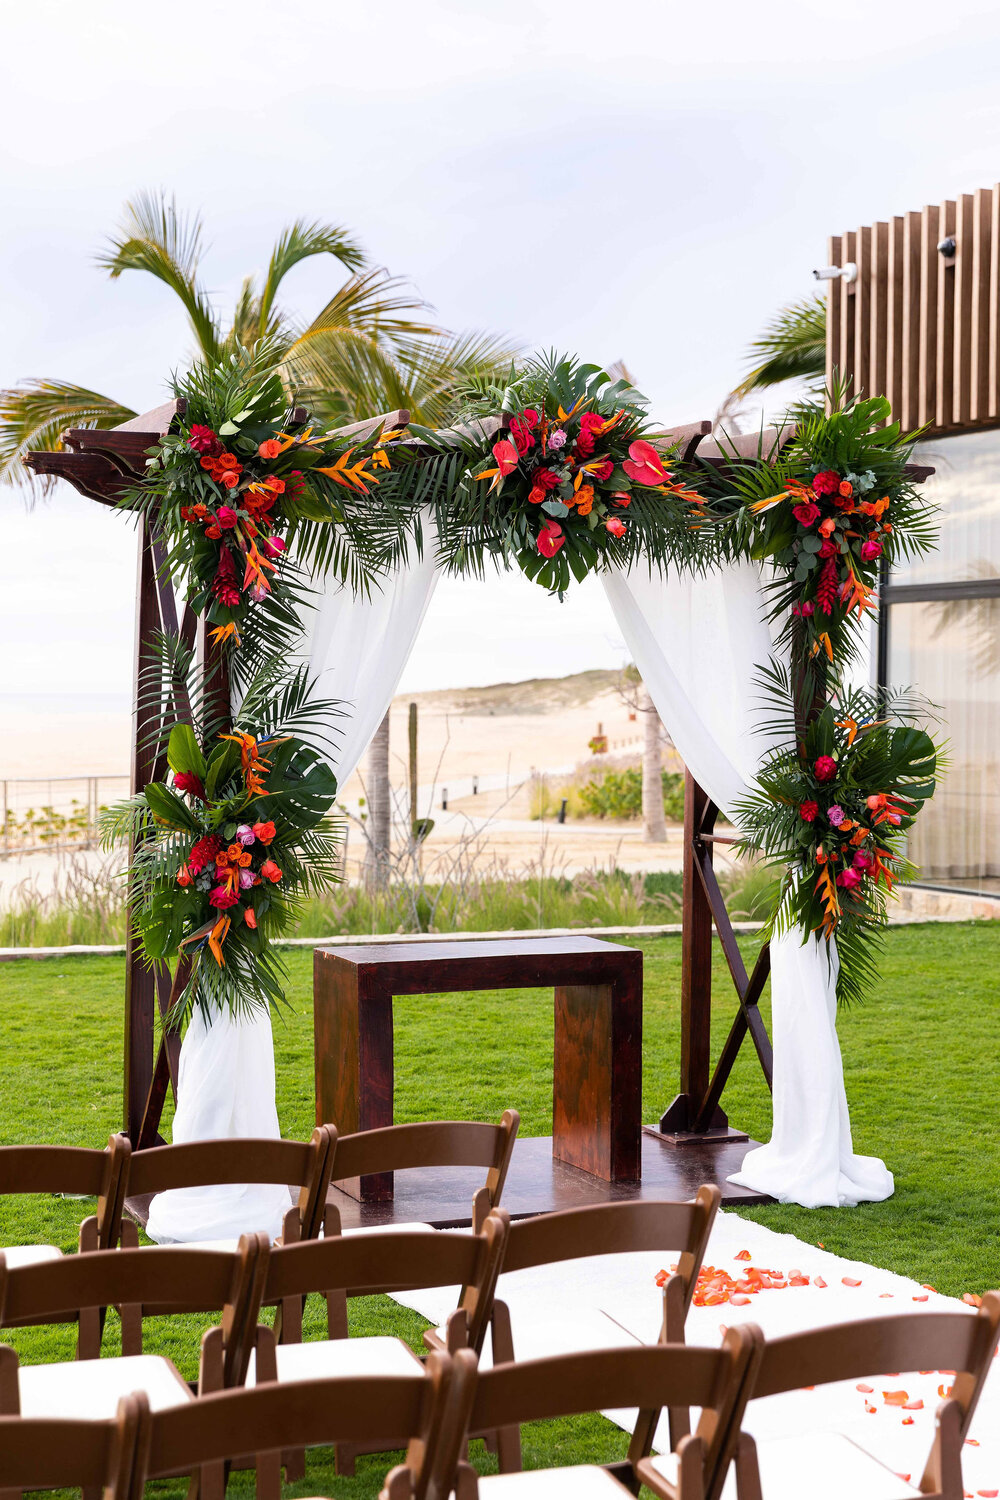 Michael-Bush-Photography-Tony-Connor-Destination-Wedding-LosCabos-Ceremony-site-decor-florals-Hardrockhotel-closeup.jpg